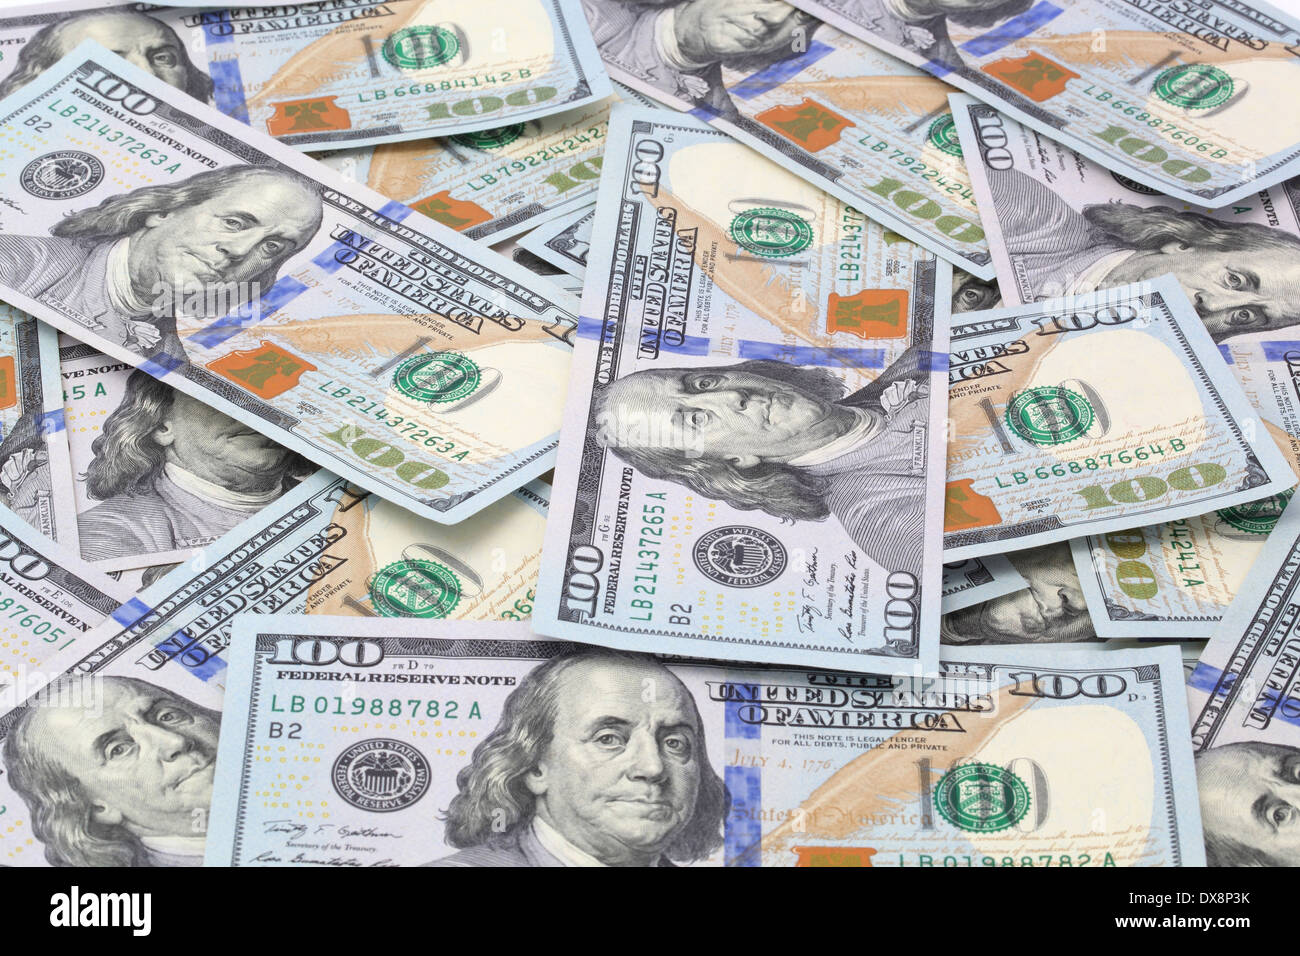 dollar bills Stock Photo